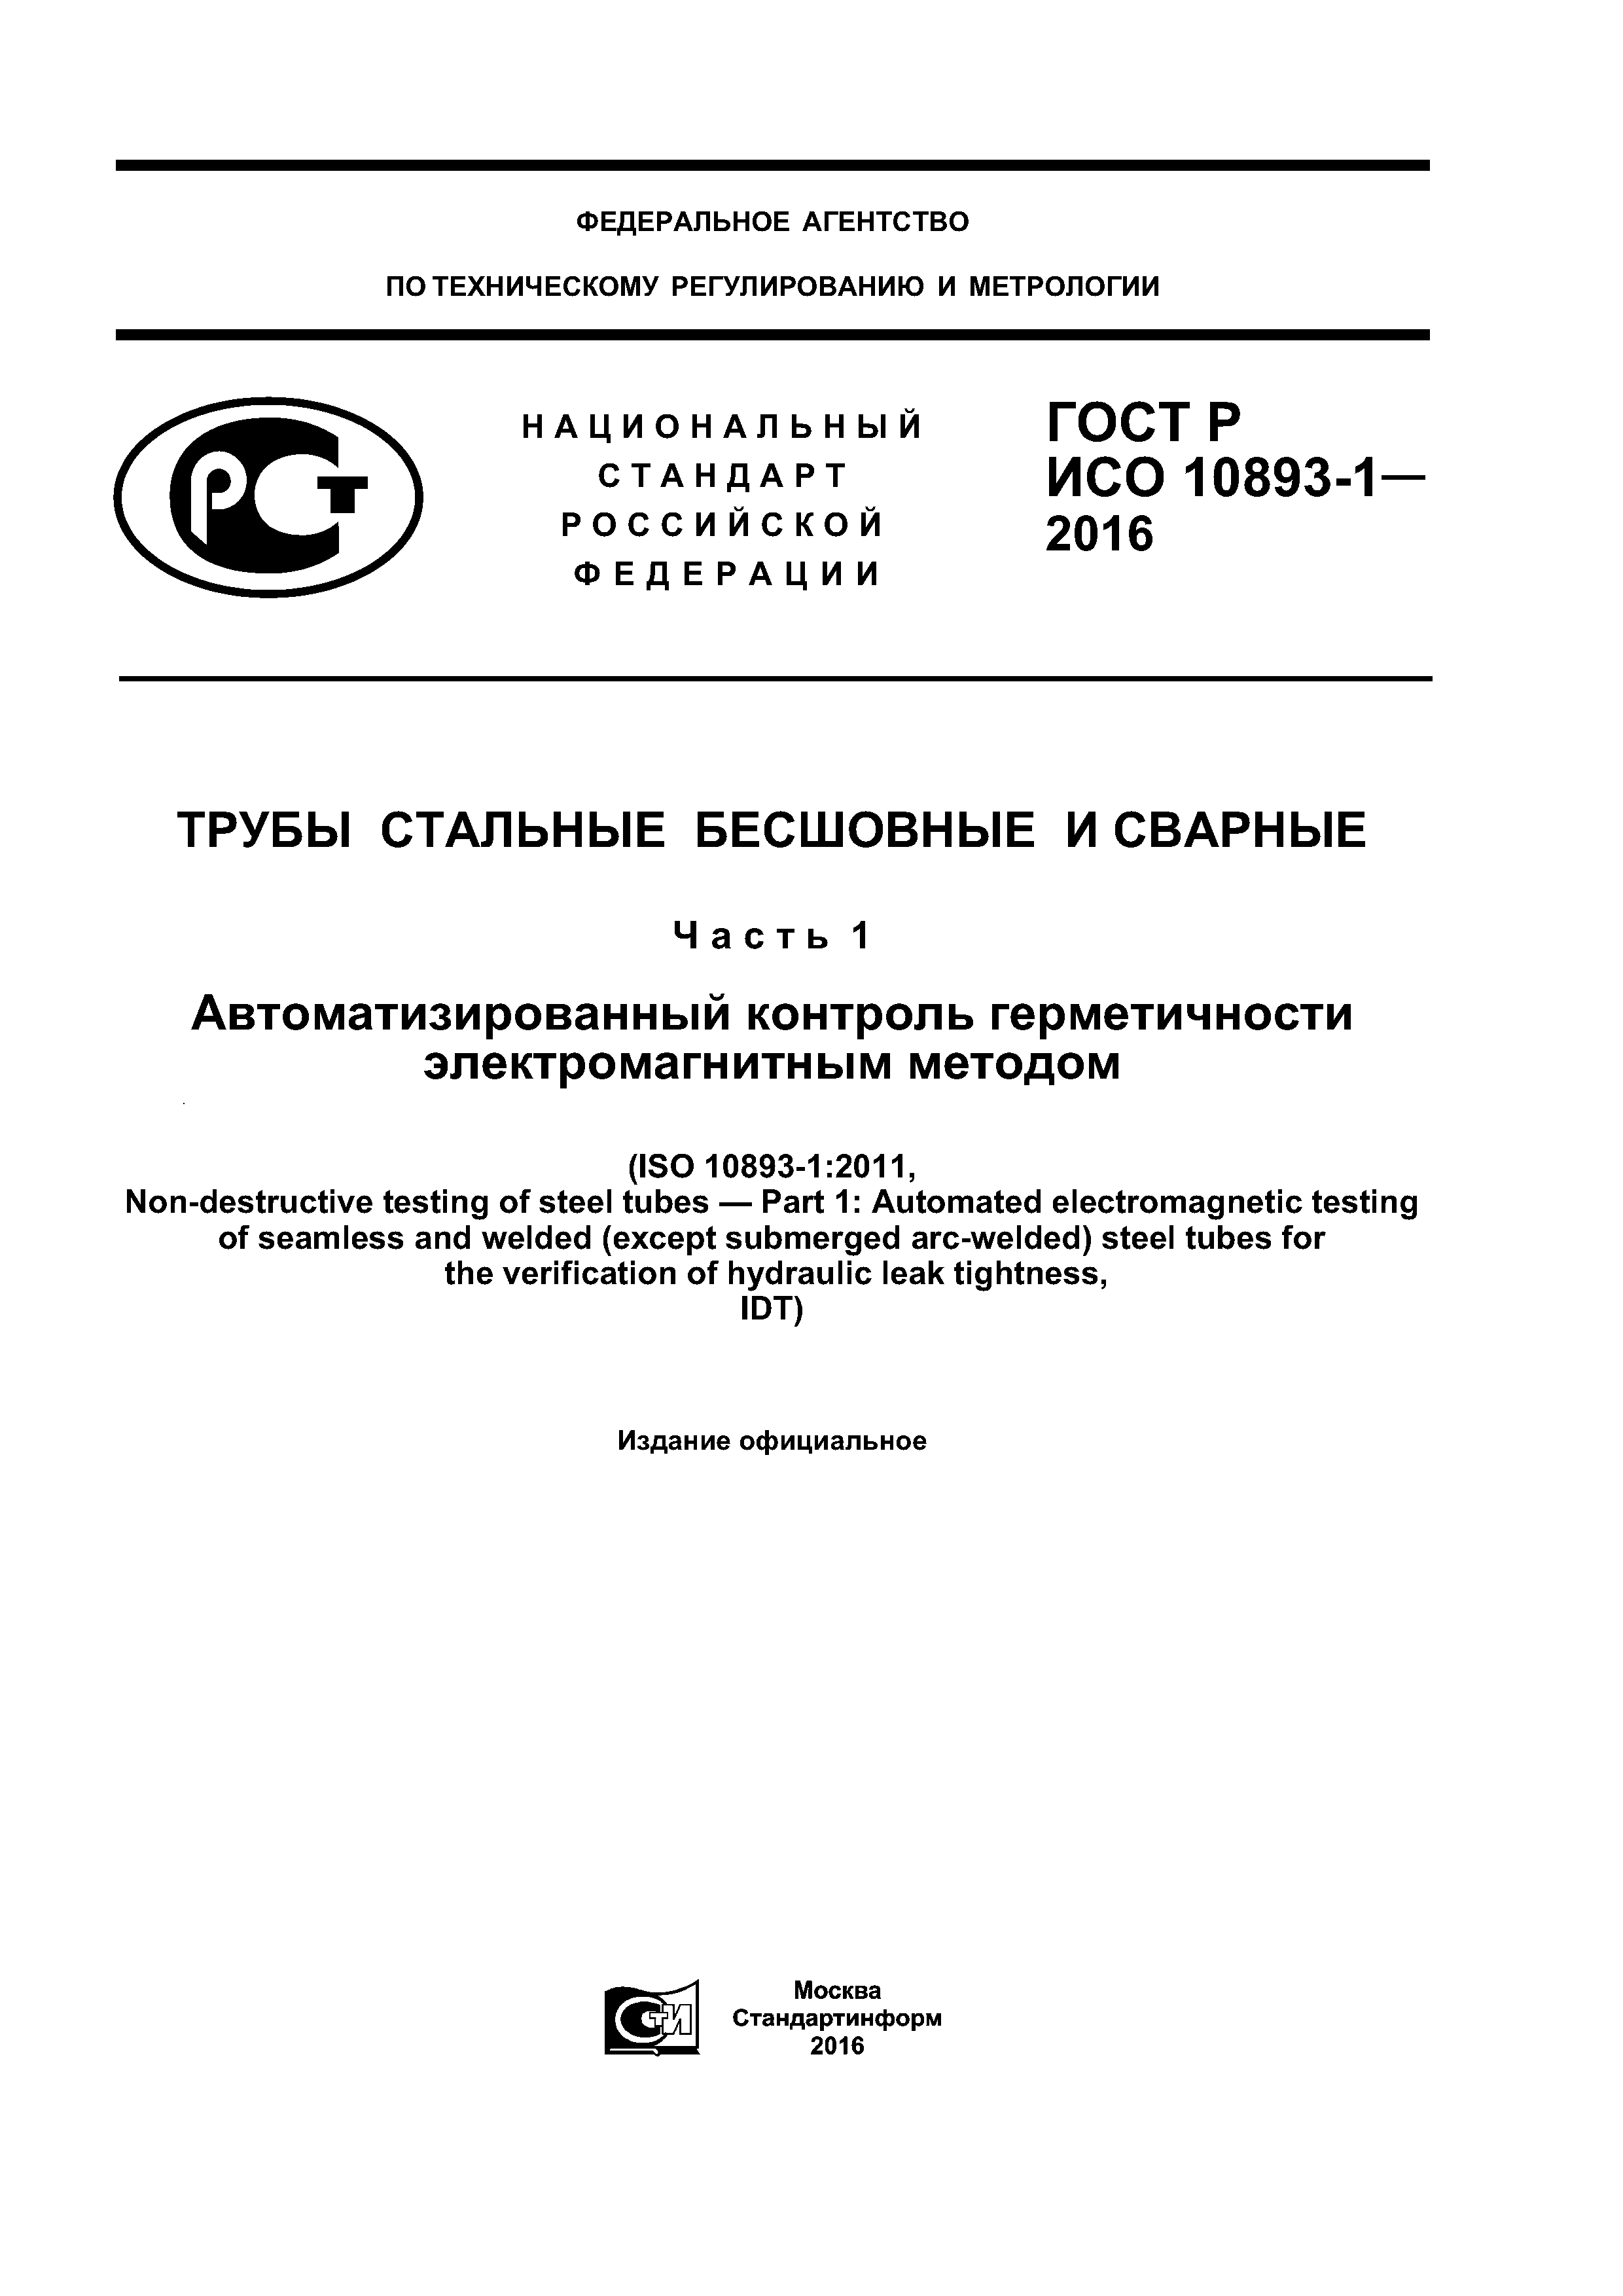 ГОСТ Р ИСО 10893-1-2016